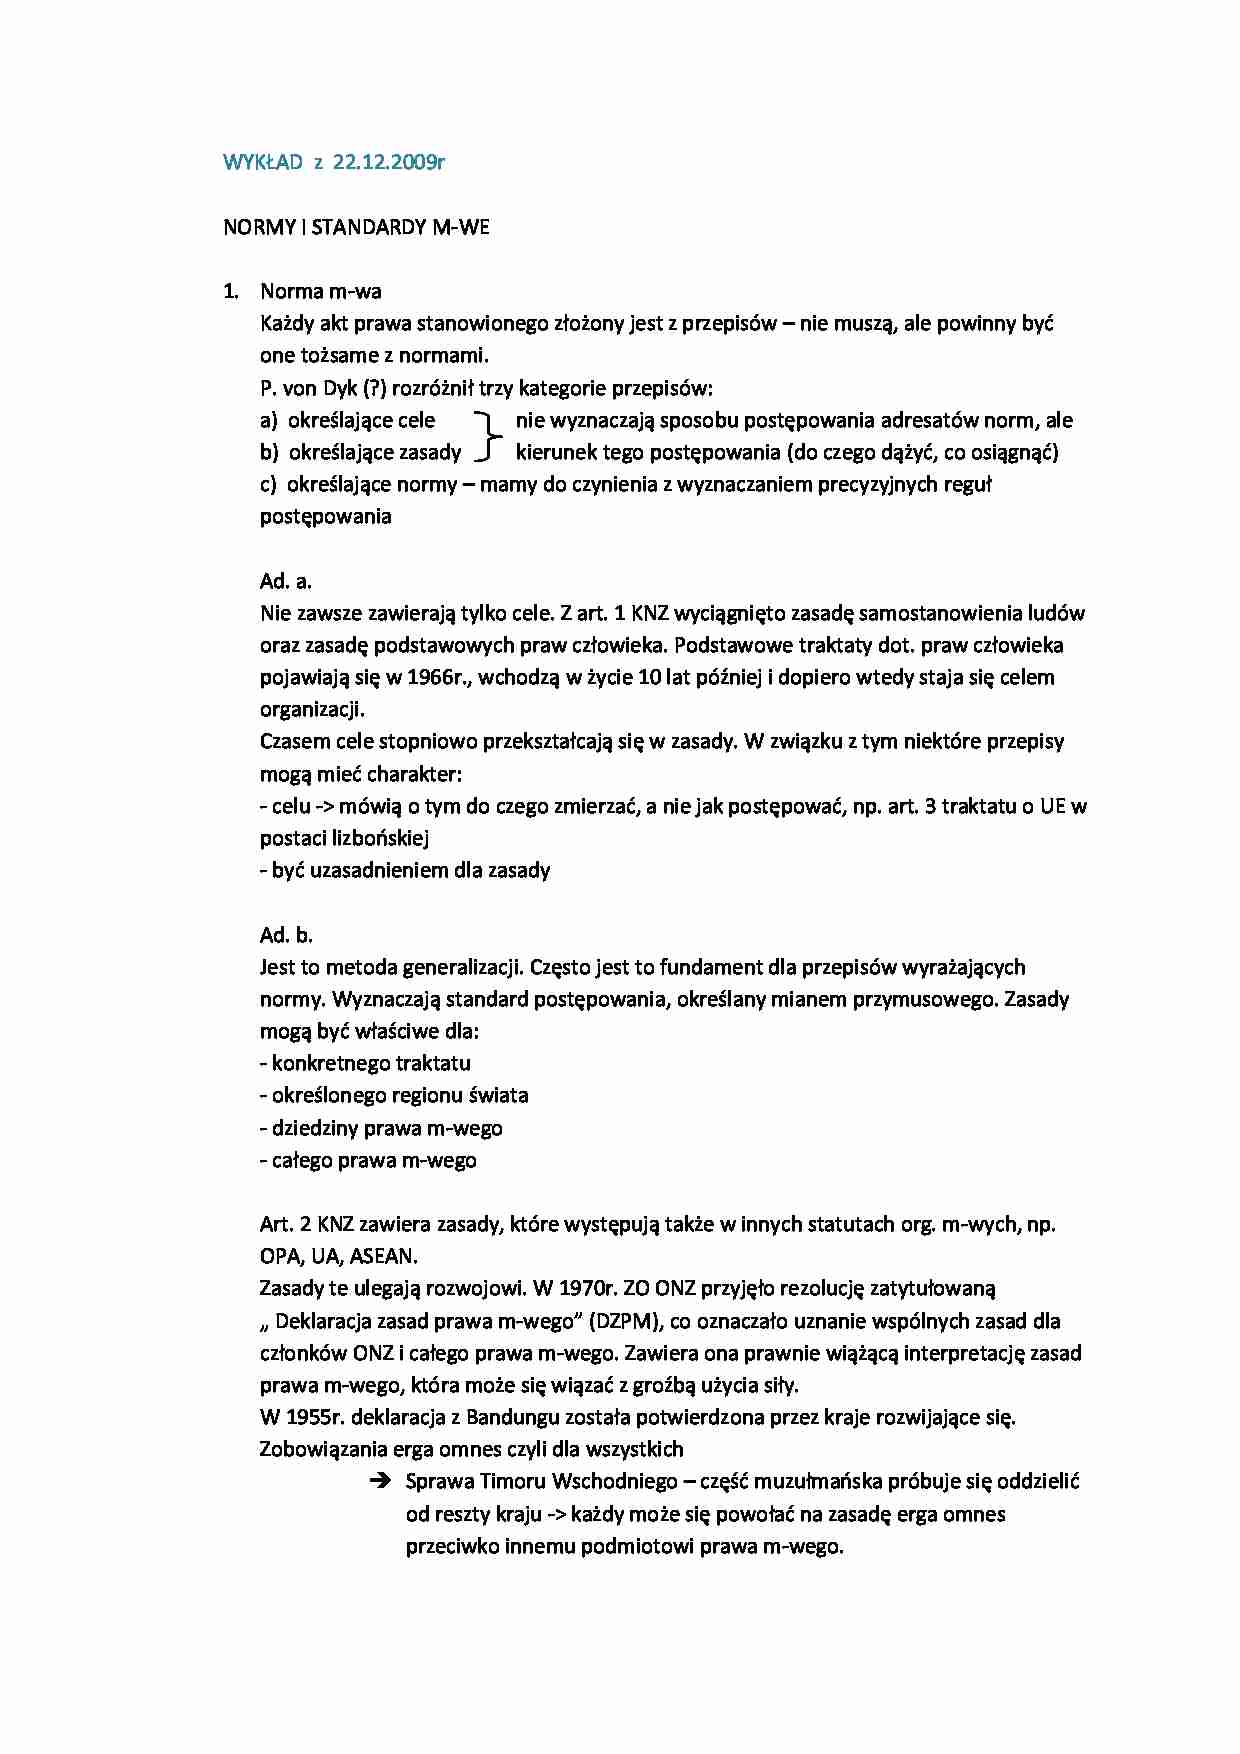 Normy i standardy międzynarodowe - wykład - strona 1